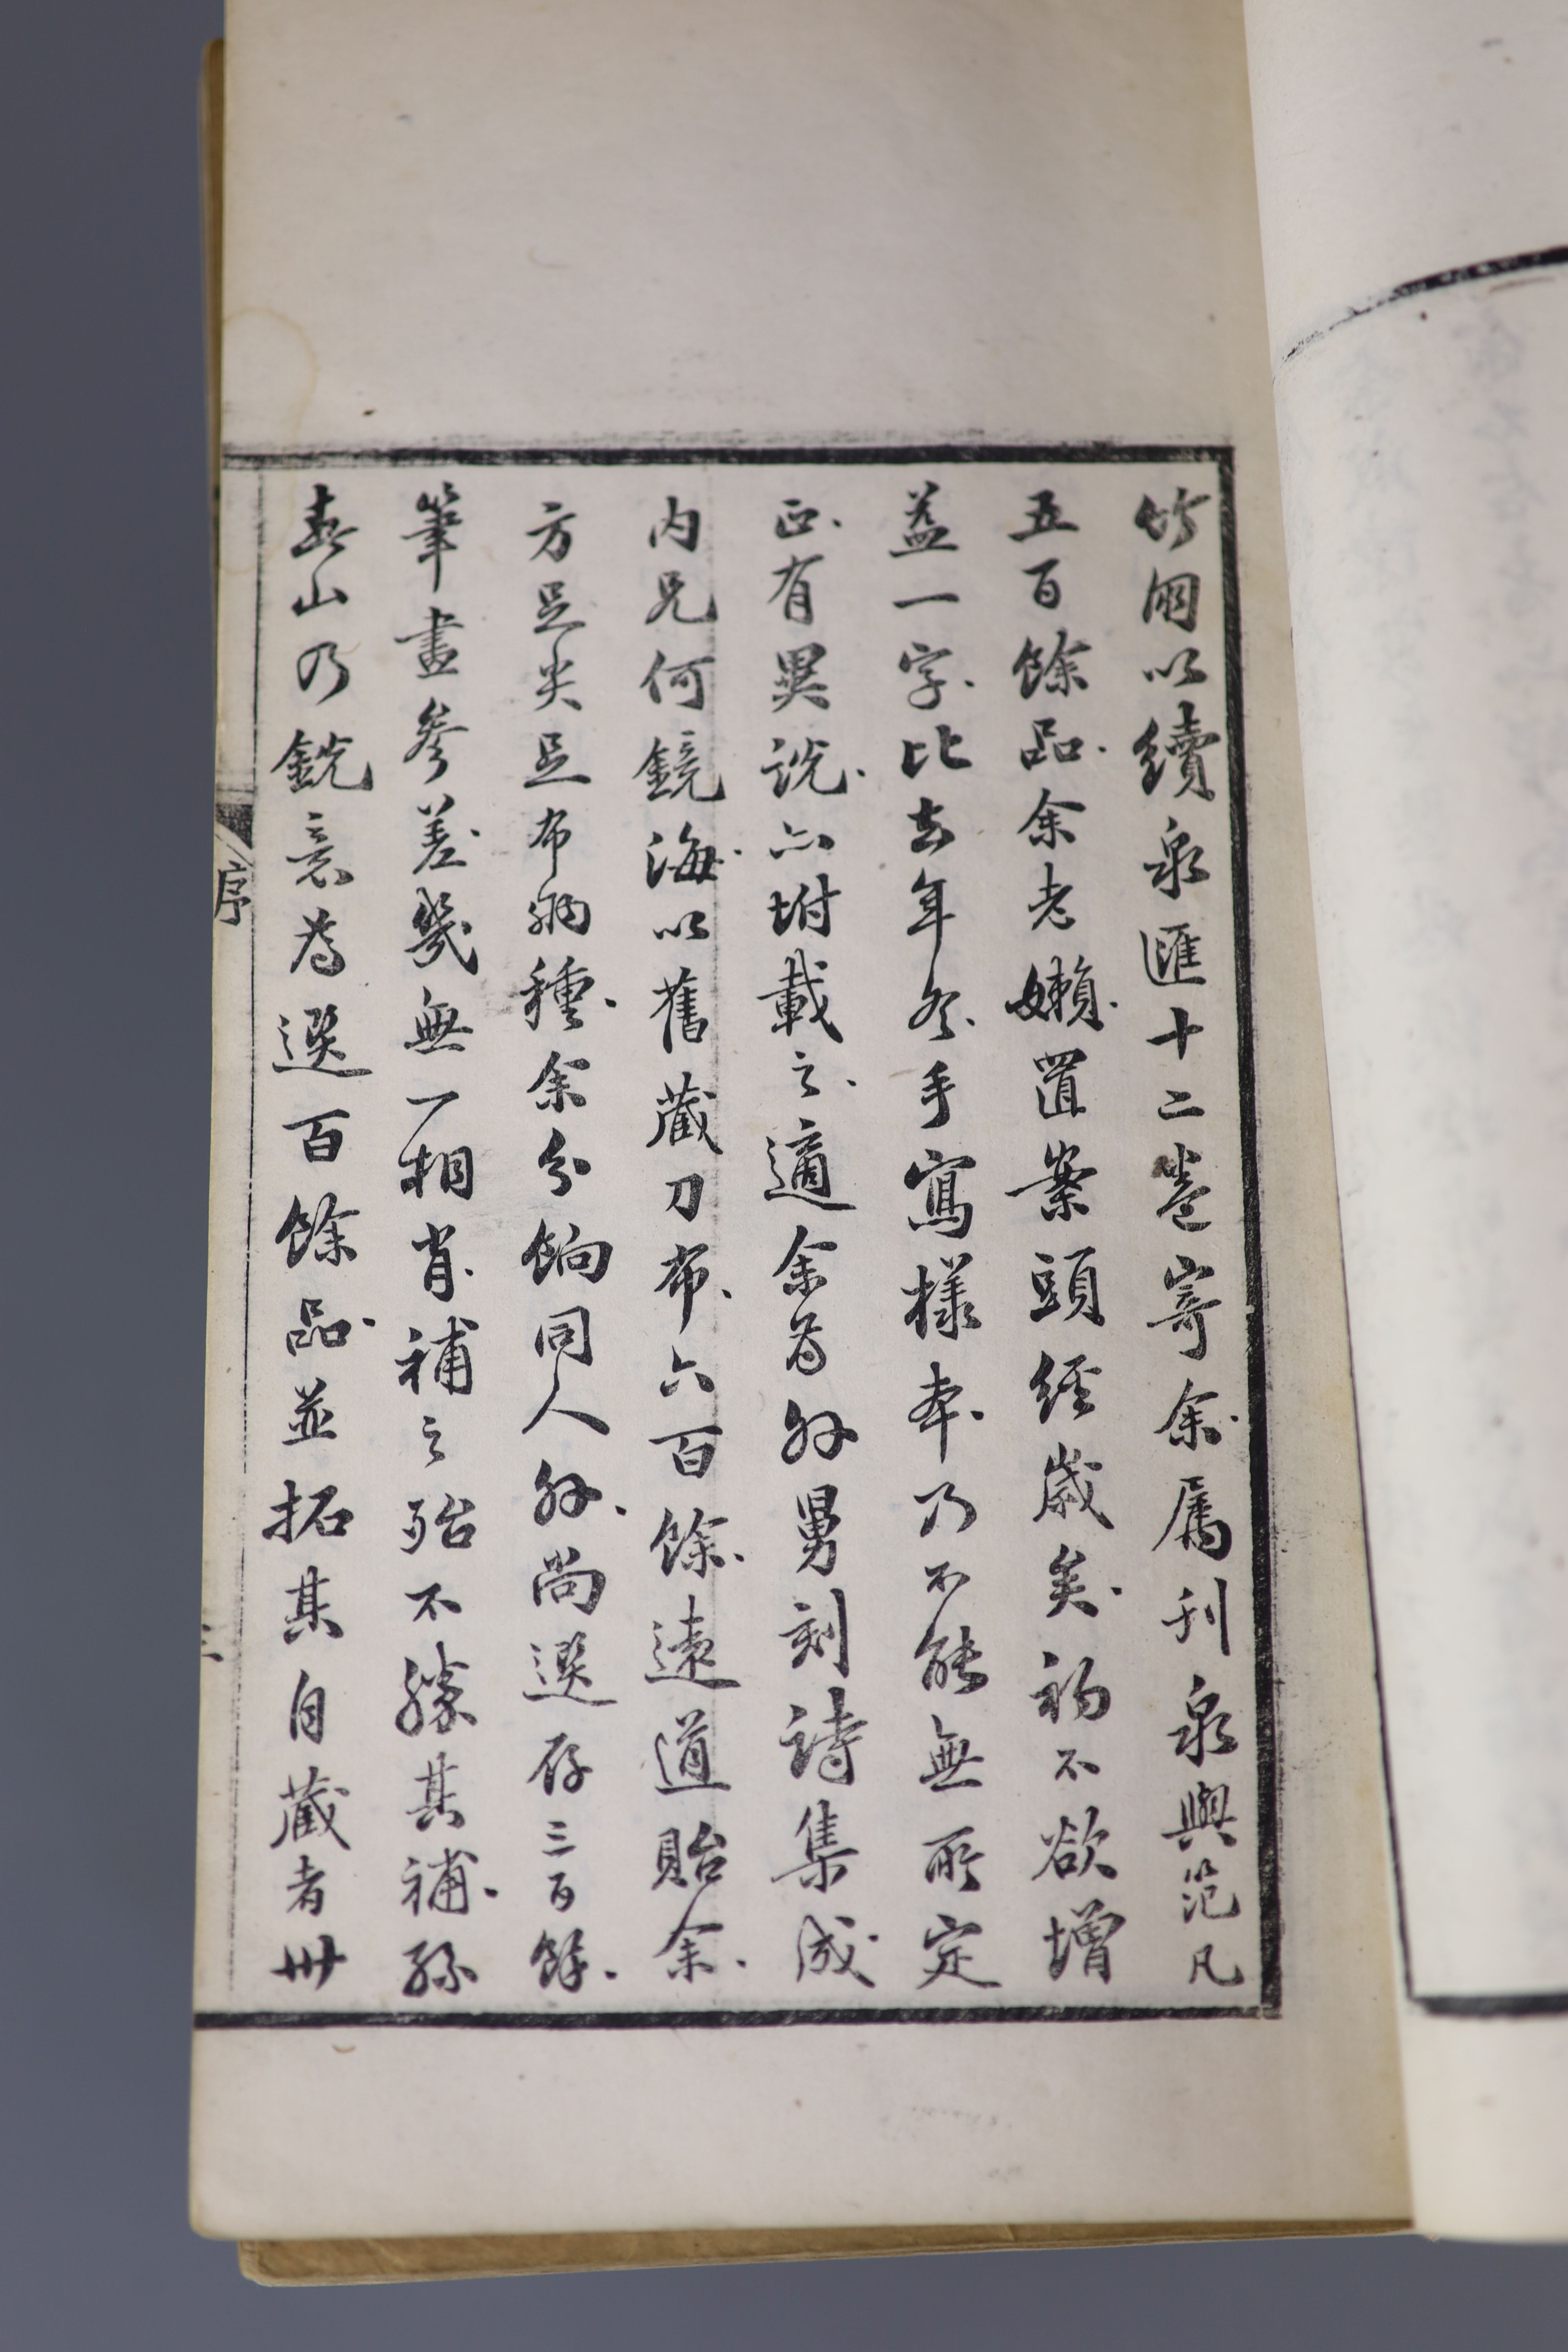 Li Zhuoxian, Gu quan hui (Collecting old coins), published in Beijing, Tongzhi jia zi, 1864, 16 volumes and Li Zhuoxian, Xua quan hu